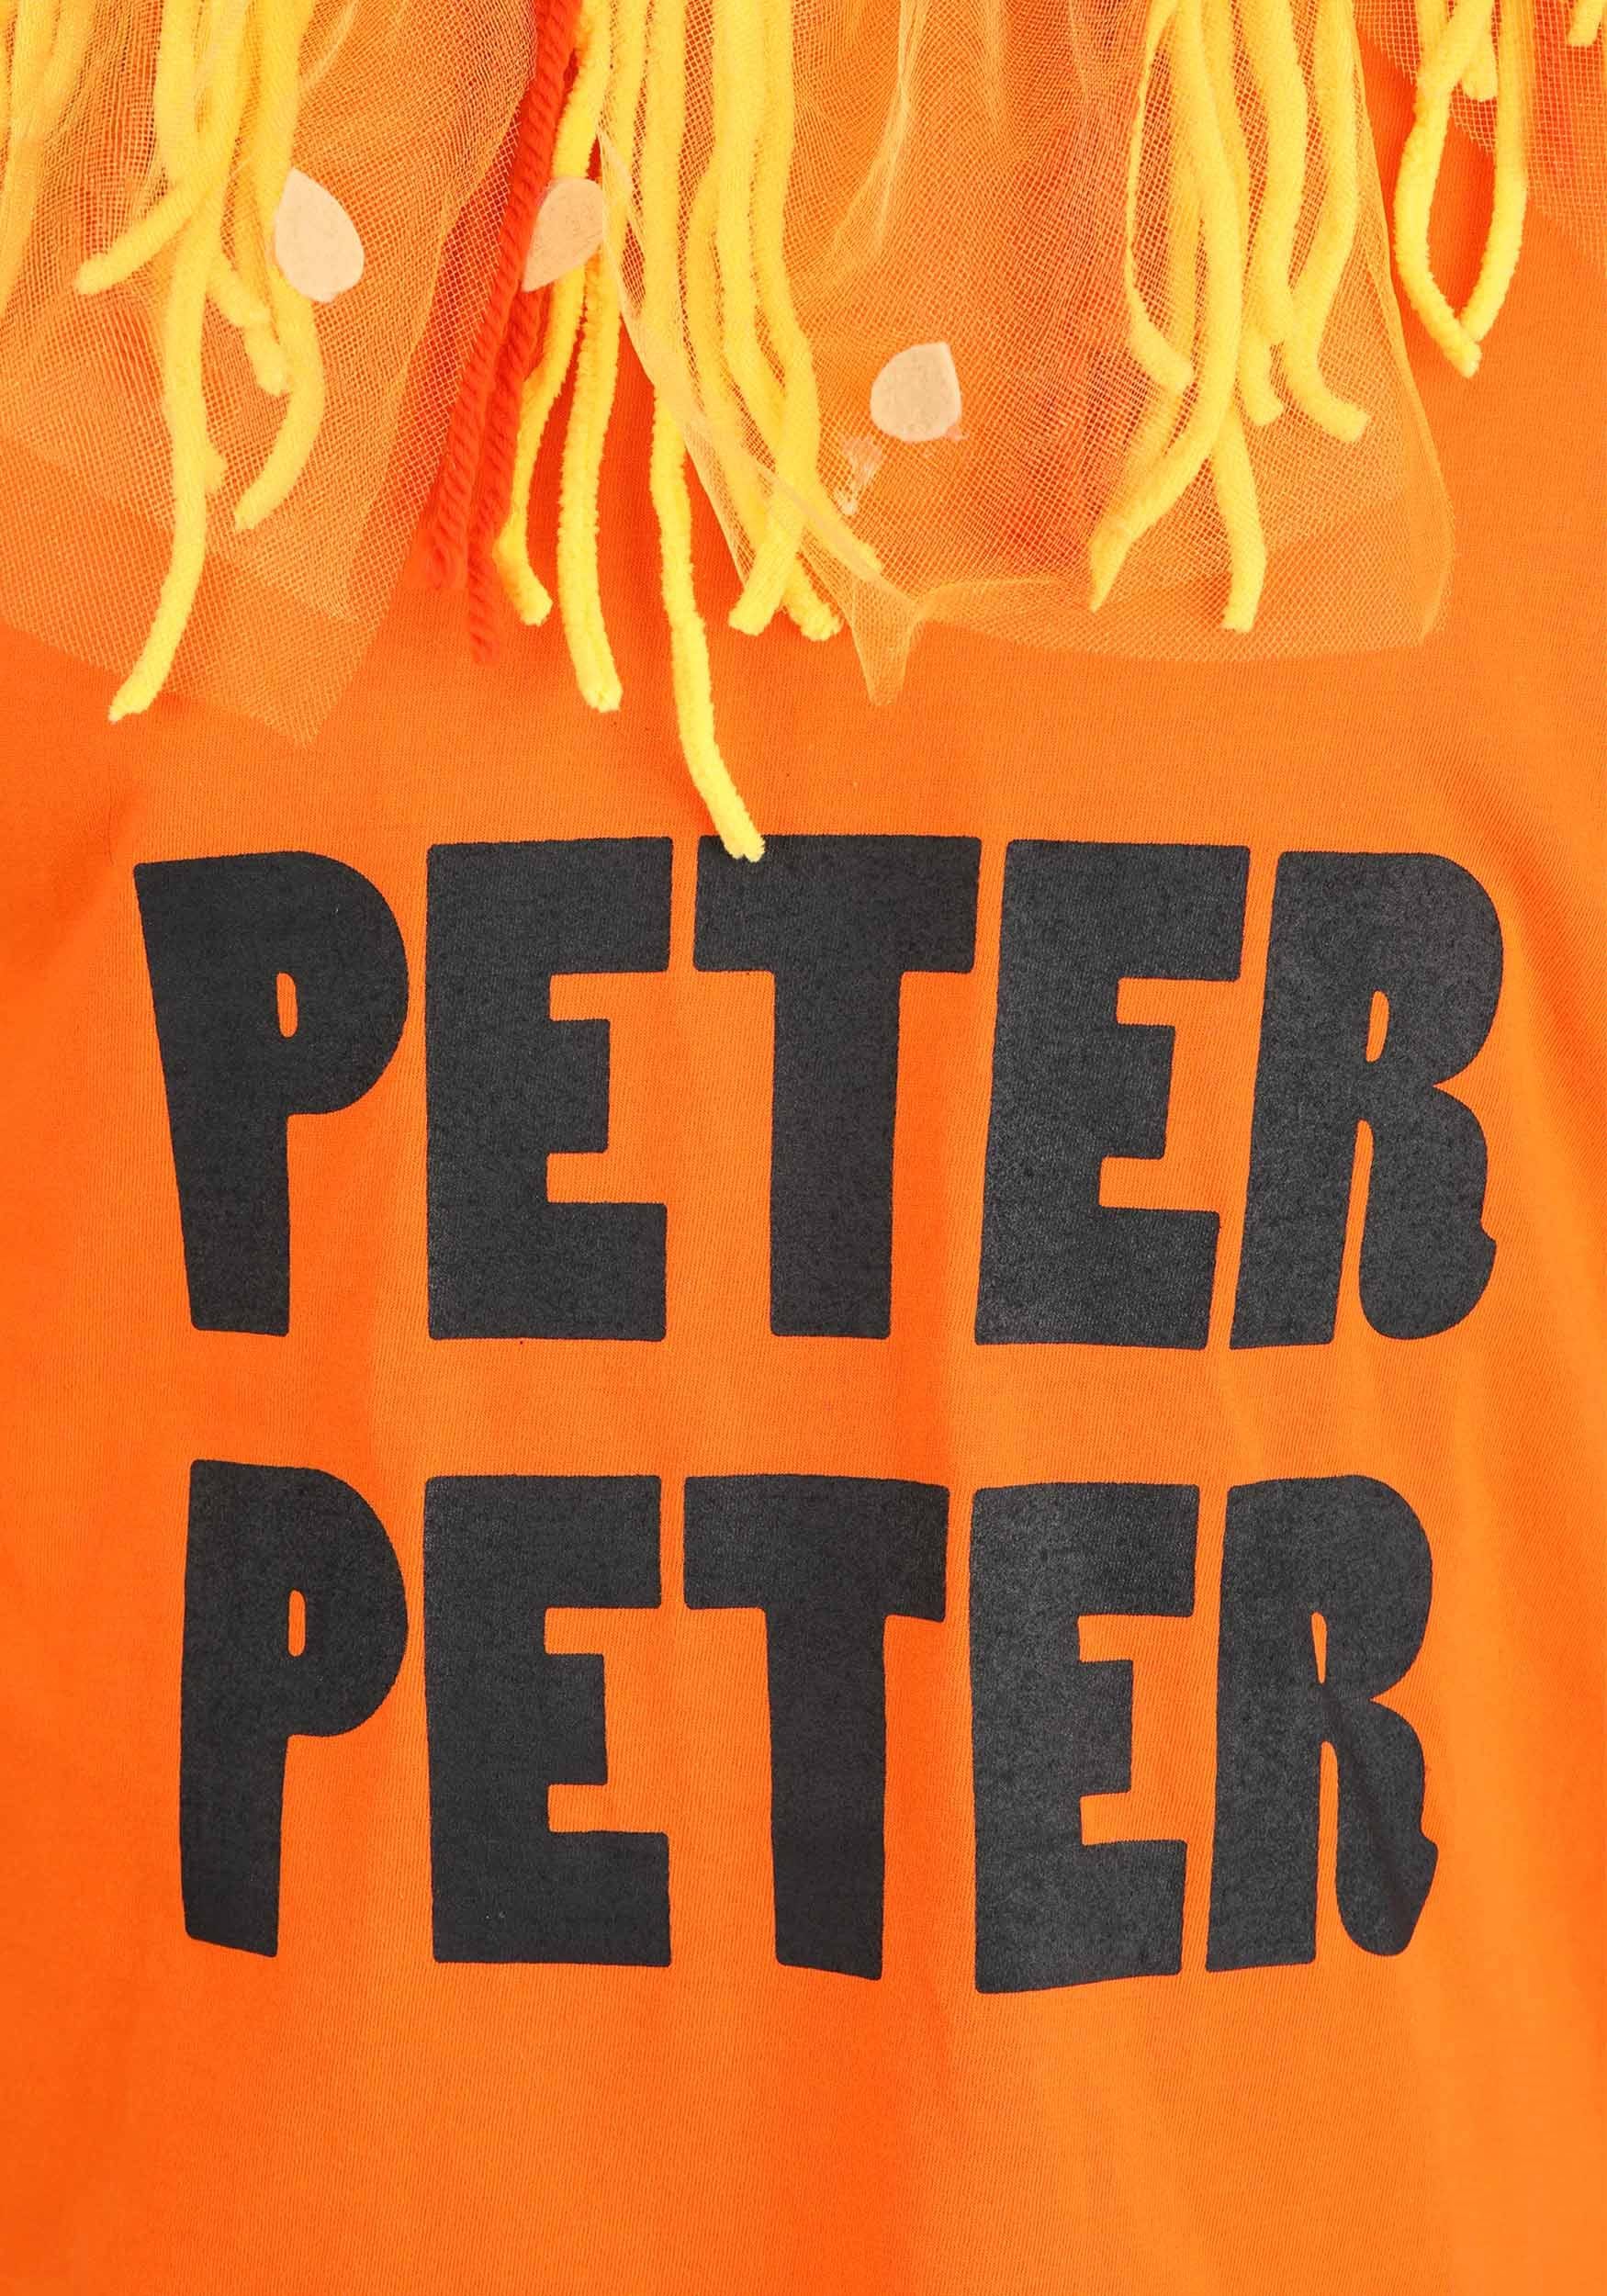 Peter Peter Pumpkin Eater Accessory Kit